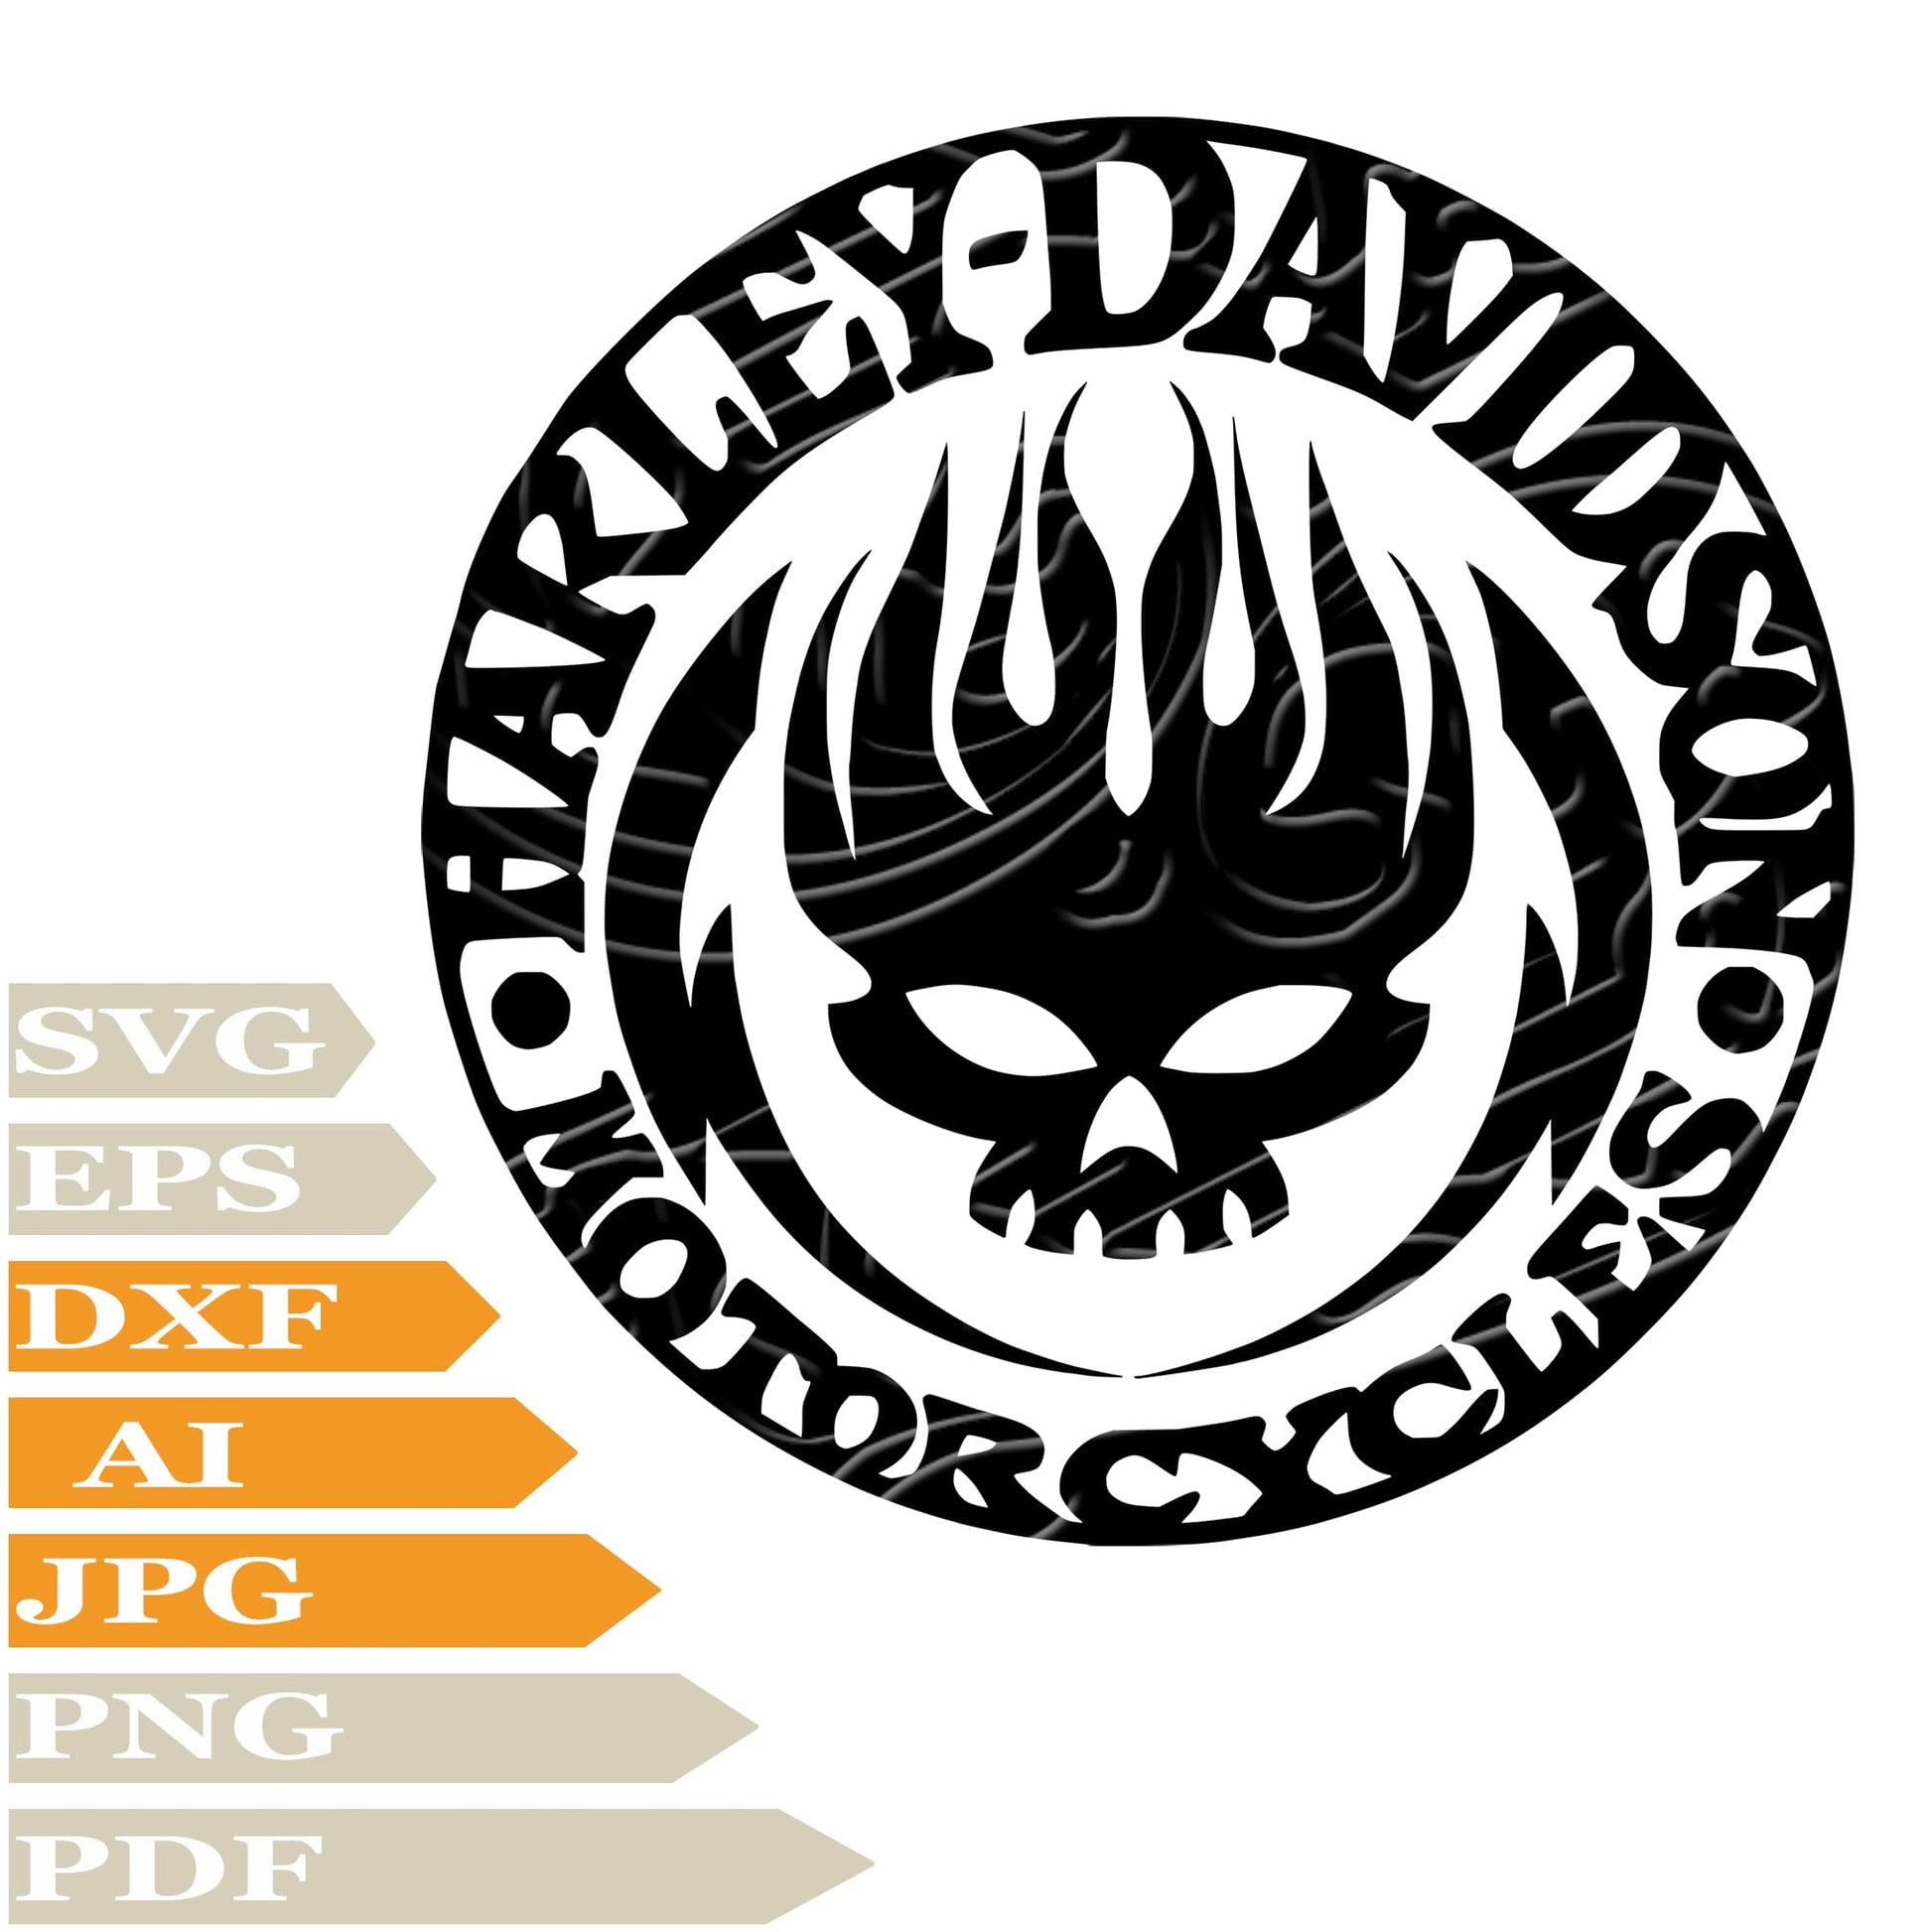 Harley Davidson Svg File, Skull Harley Davidson Svg Design, Skull Png, Harley Davidson Logo Vector Graphics, Skull Harley Davidson Svg For Tattoo, Harley Davidson Svg For Cricut